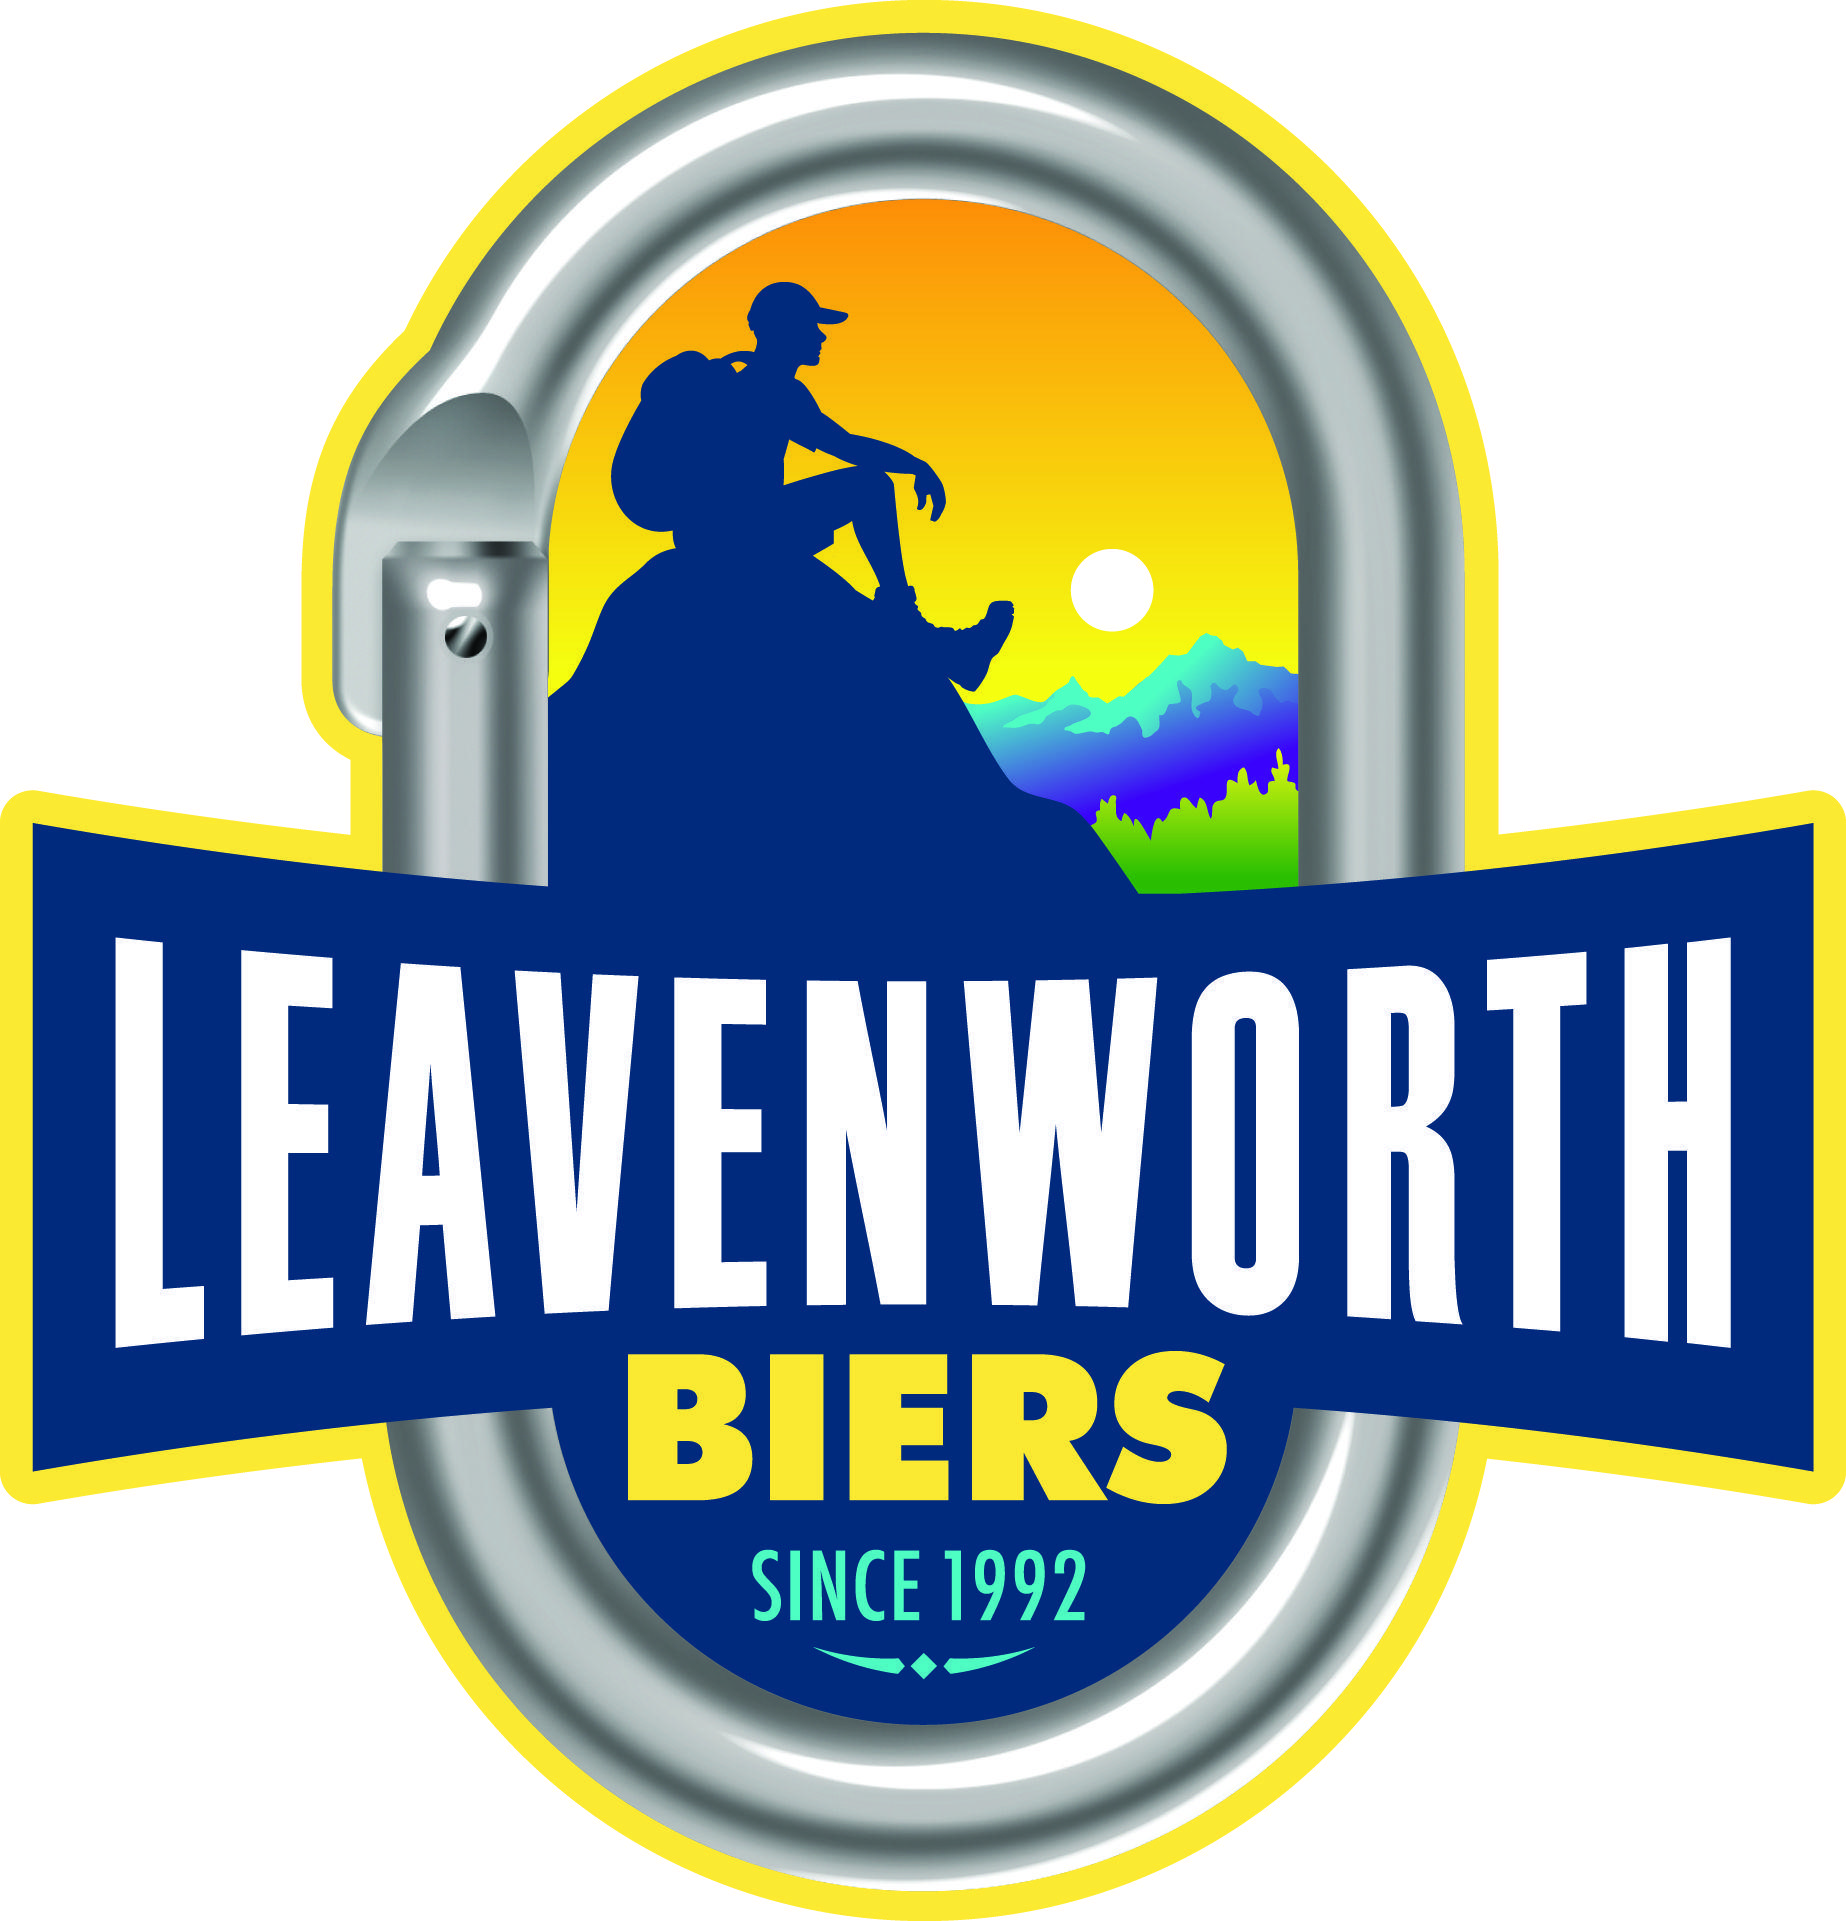 Leavenworth Logo - Index Of Pos Beer Leavenworth Biers